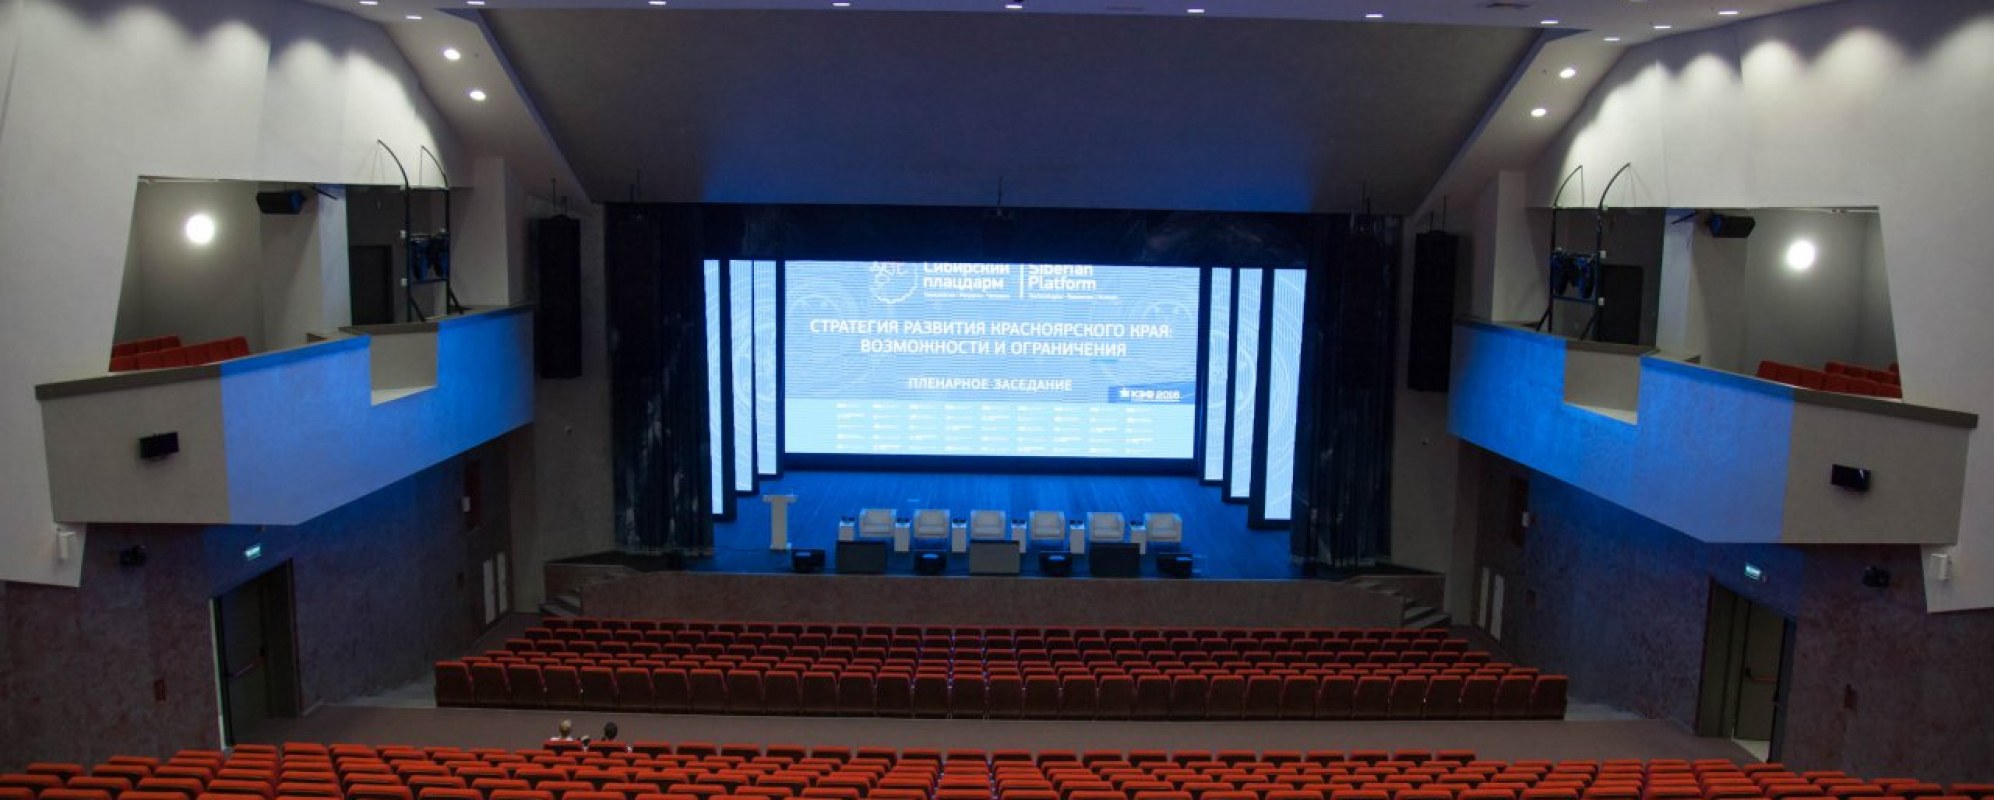 Фотографии концертного зала Многофункциональный зал Конгресс-холла СФУ